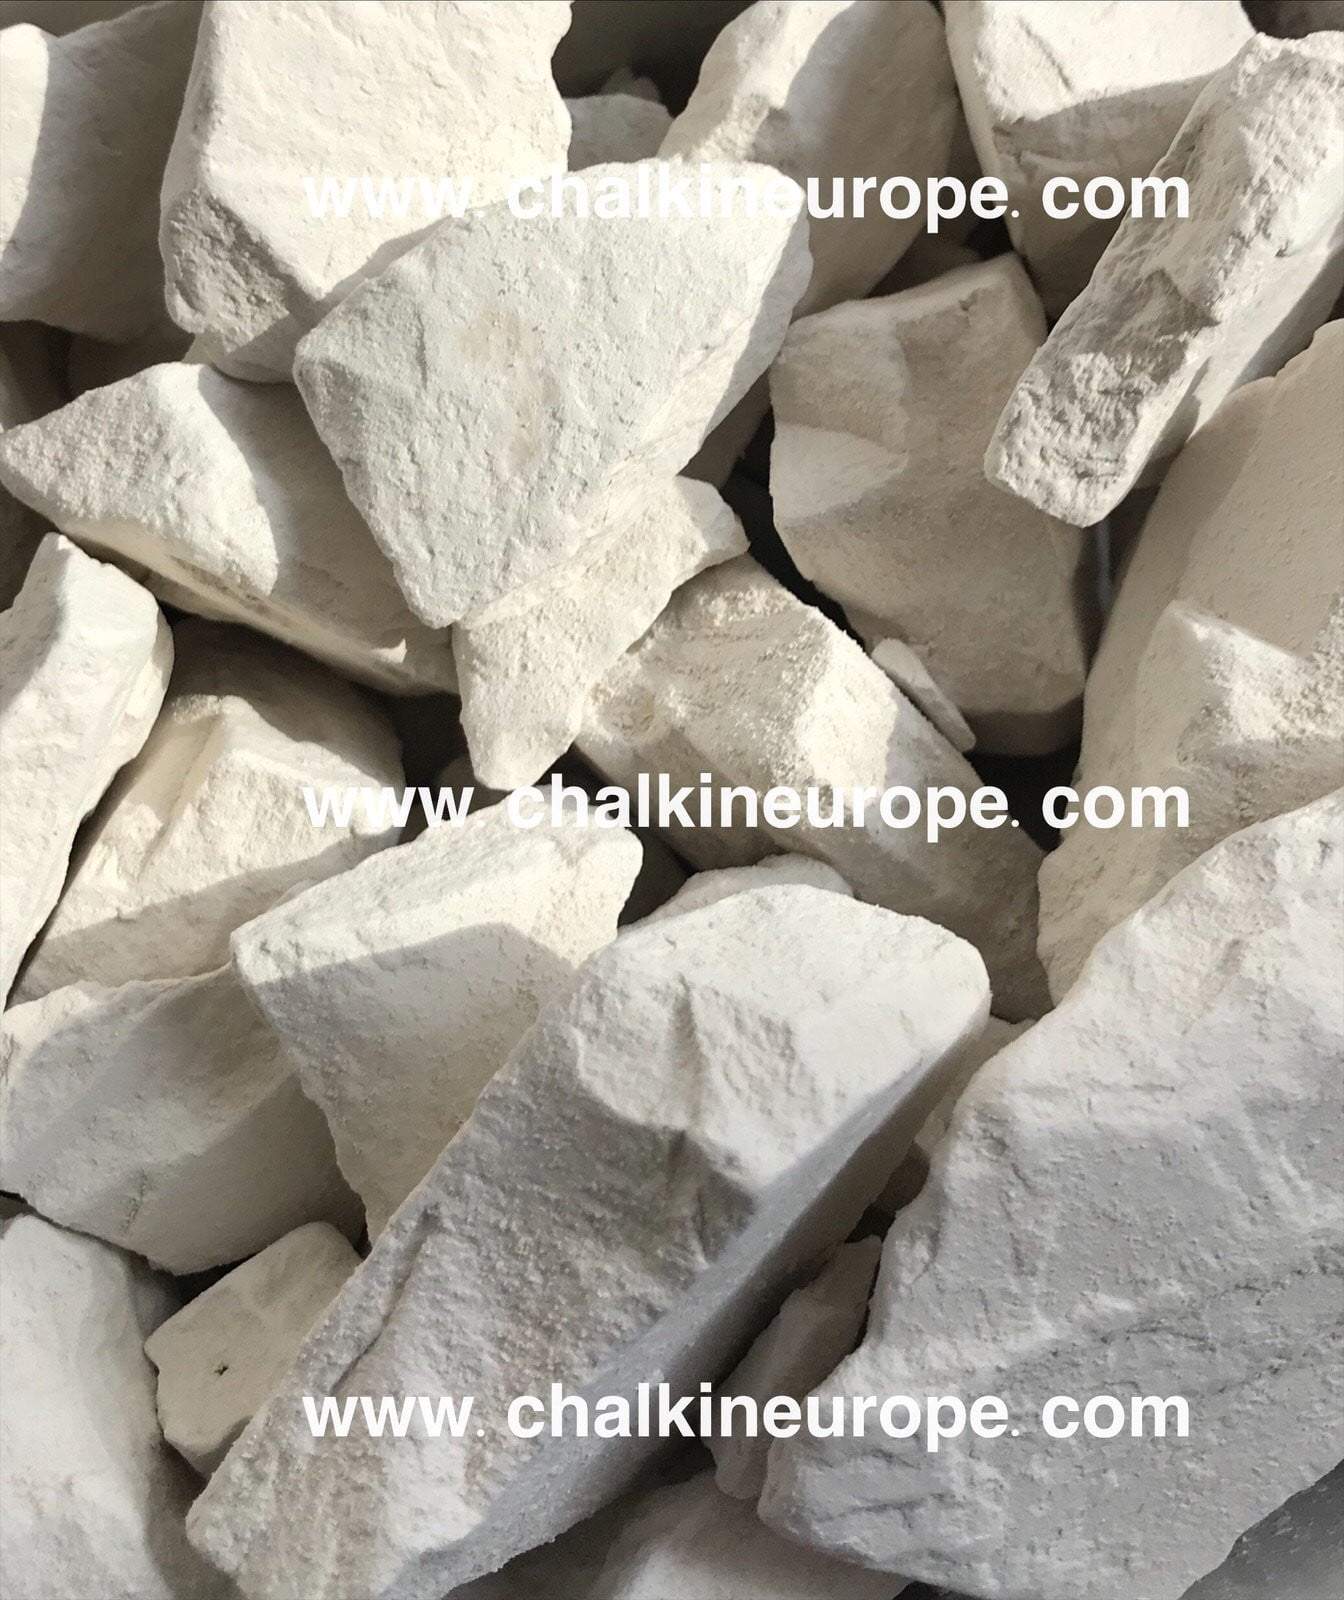 الصلصال الأبيض الطين - Chalkineurope